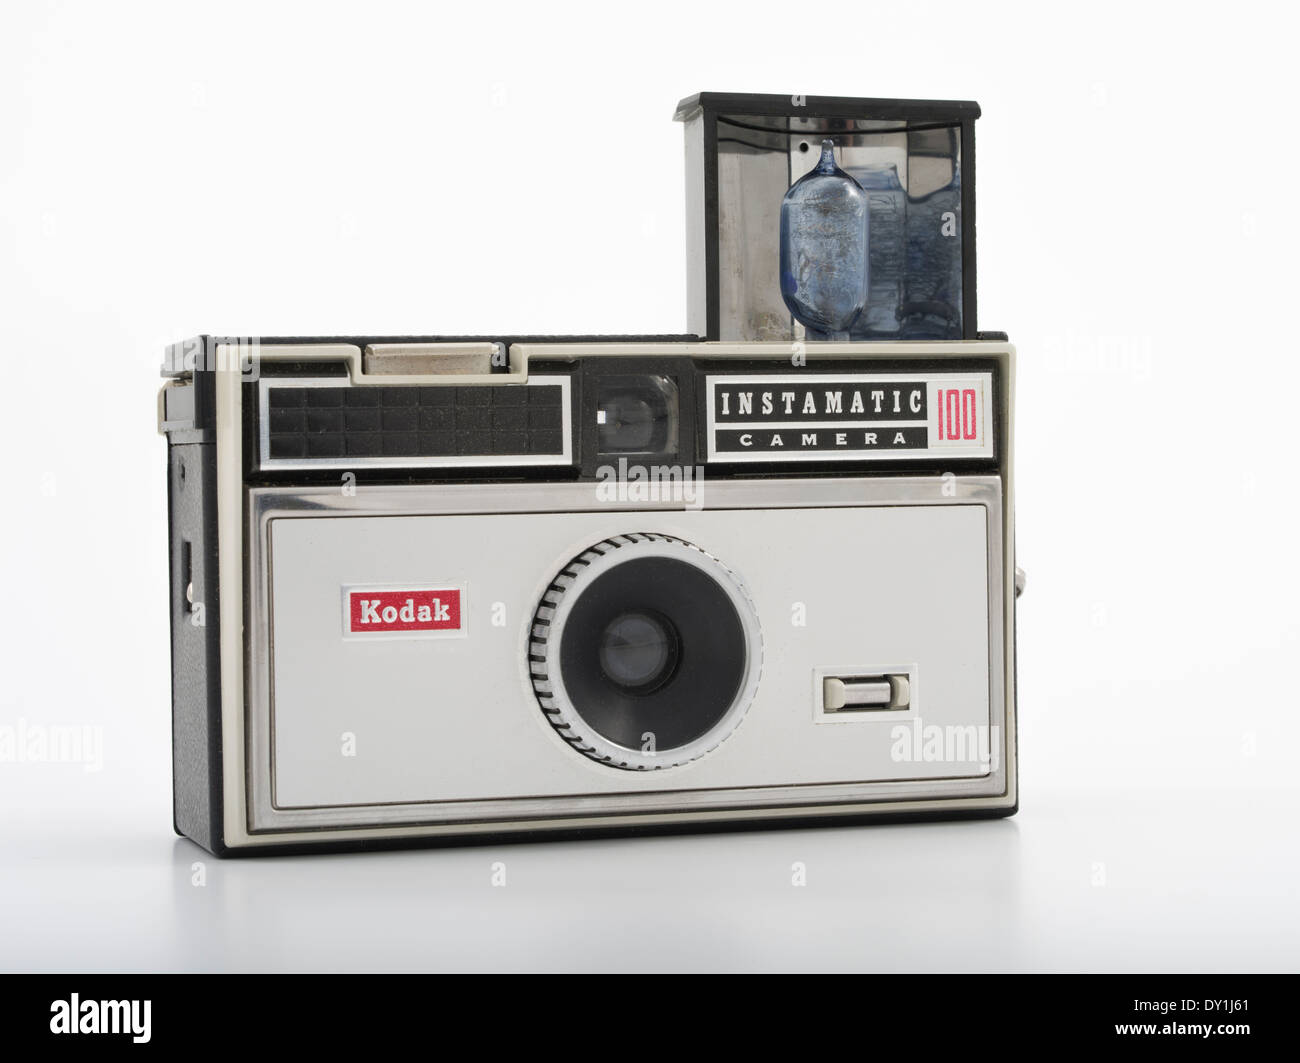 Kodak Instamatic 100 Film fotocamera con flash che utilizza il formato 126 film. Kodak 1963. Foto Stock